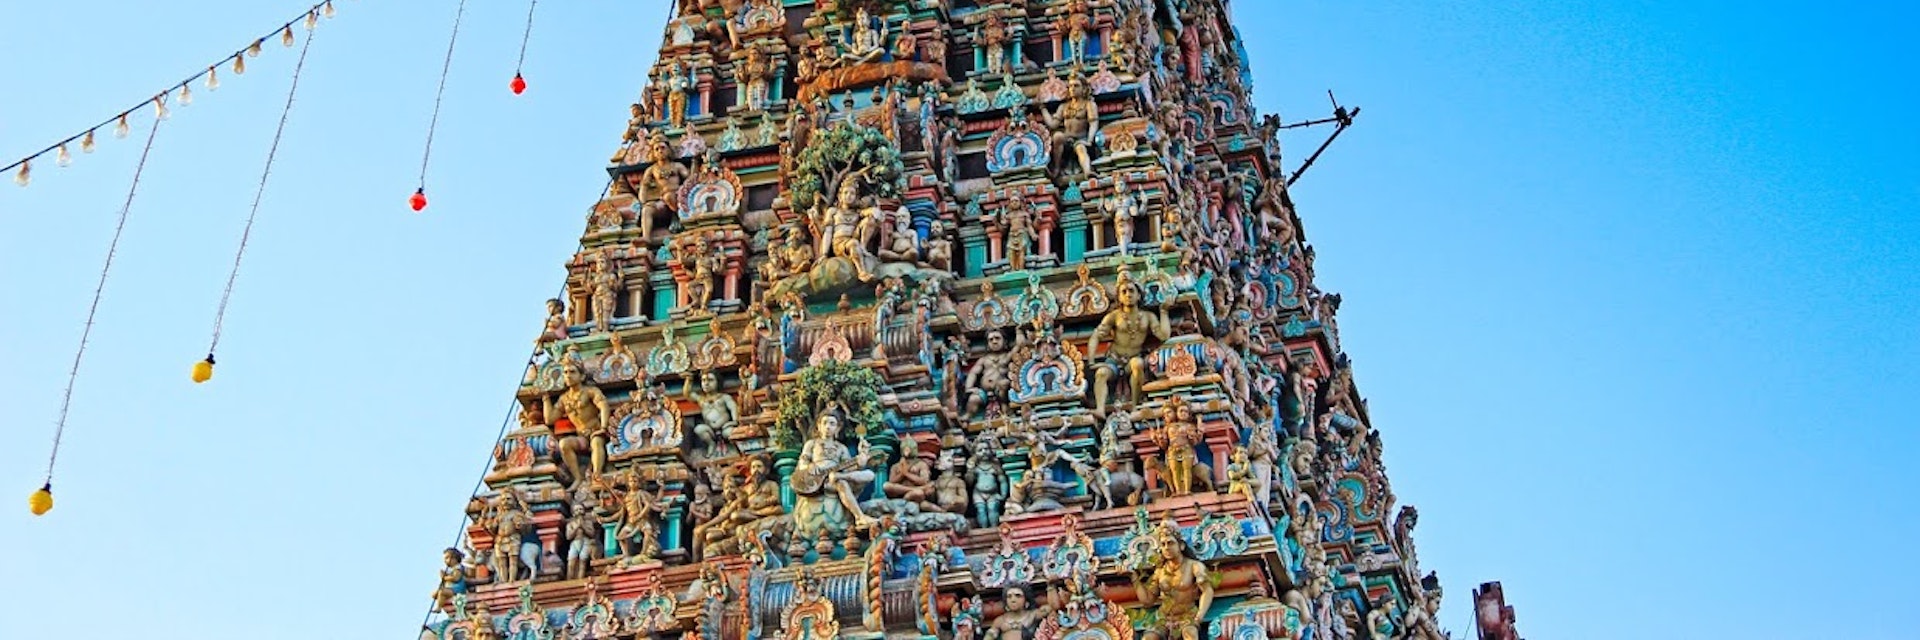 tamilnadu tourism chennai places